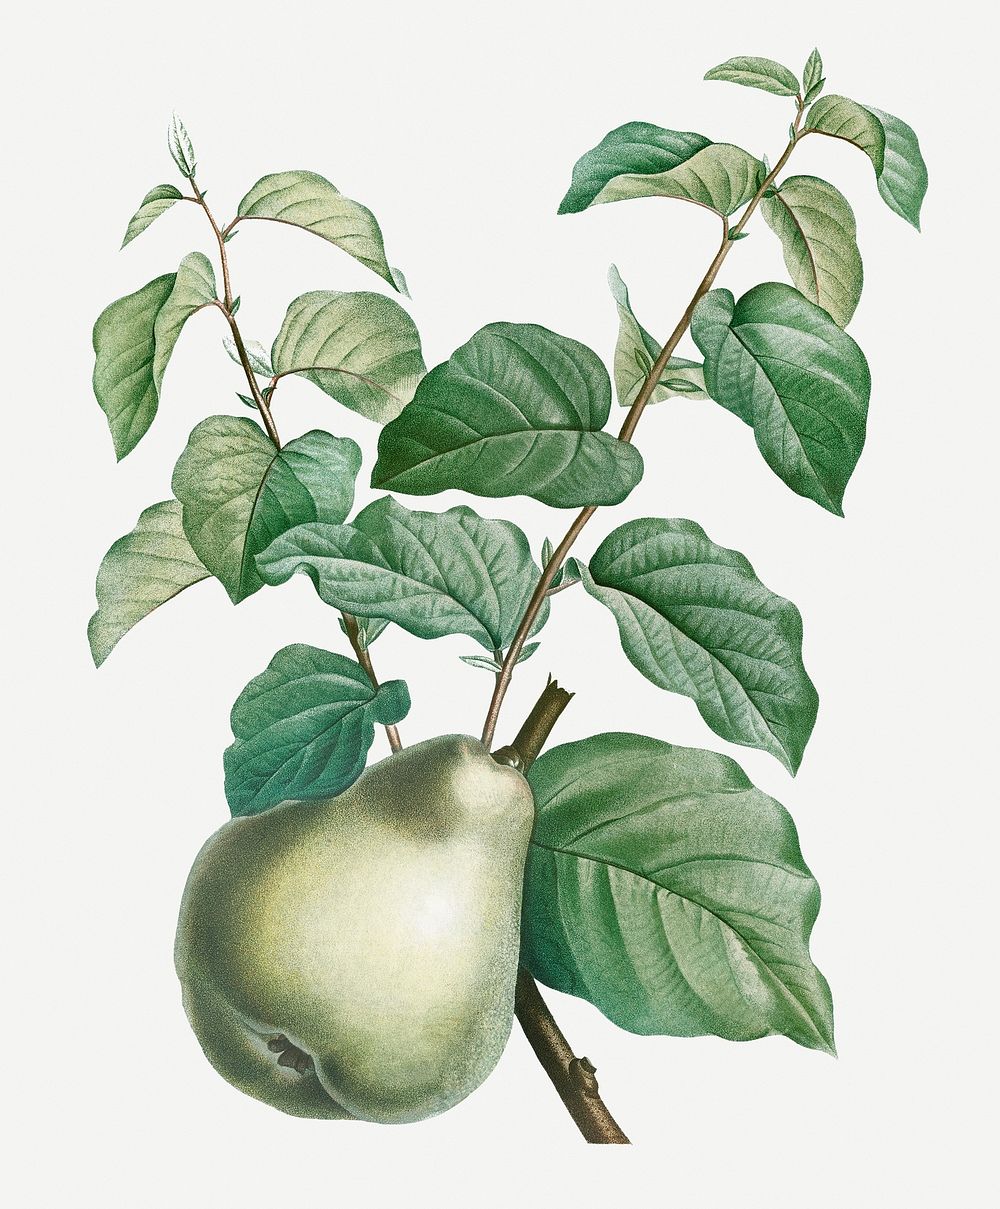 Vintage pear fruit illustration